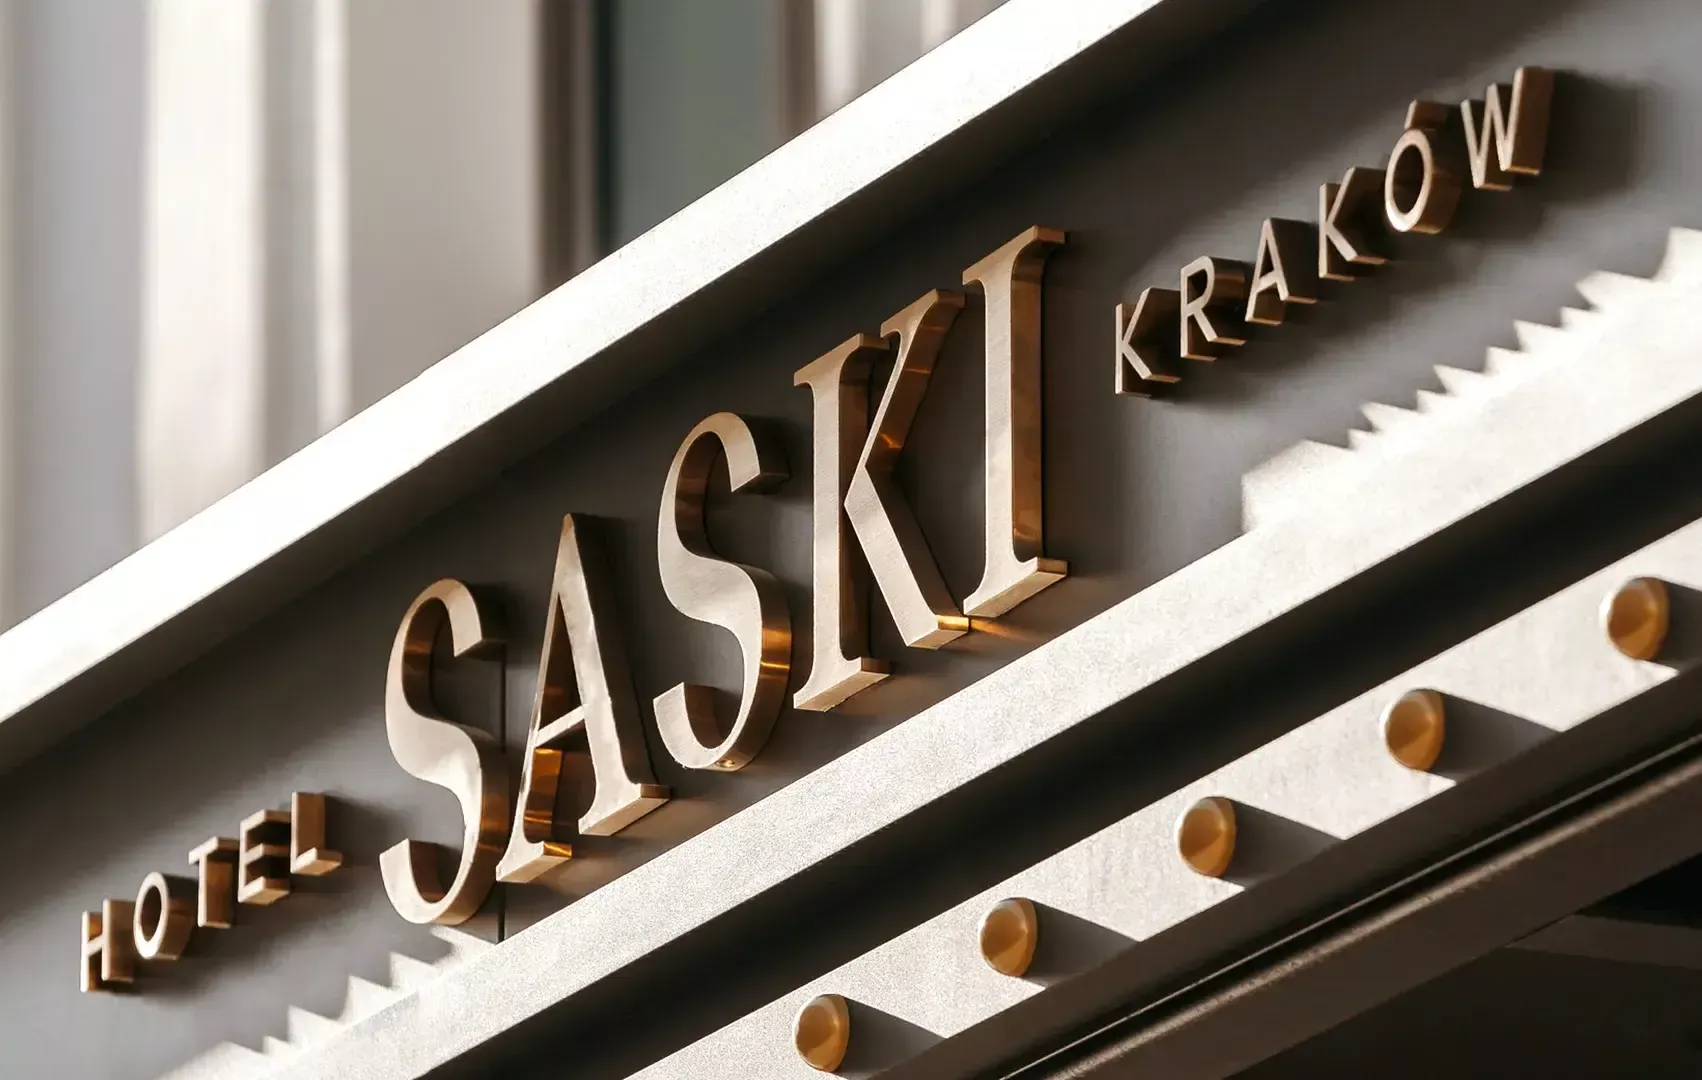 Albergo Saski - Lettere in acciaio inox spazzolato oro all'esterno dell'edificio dell'hotel Saski